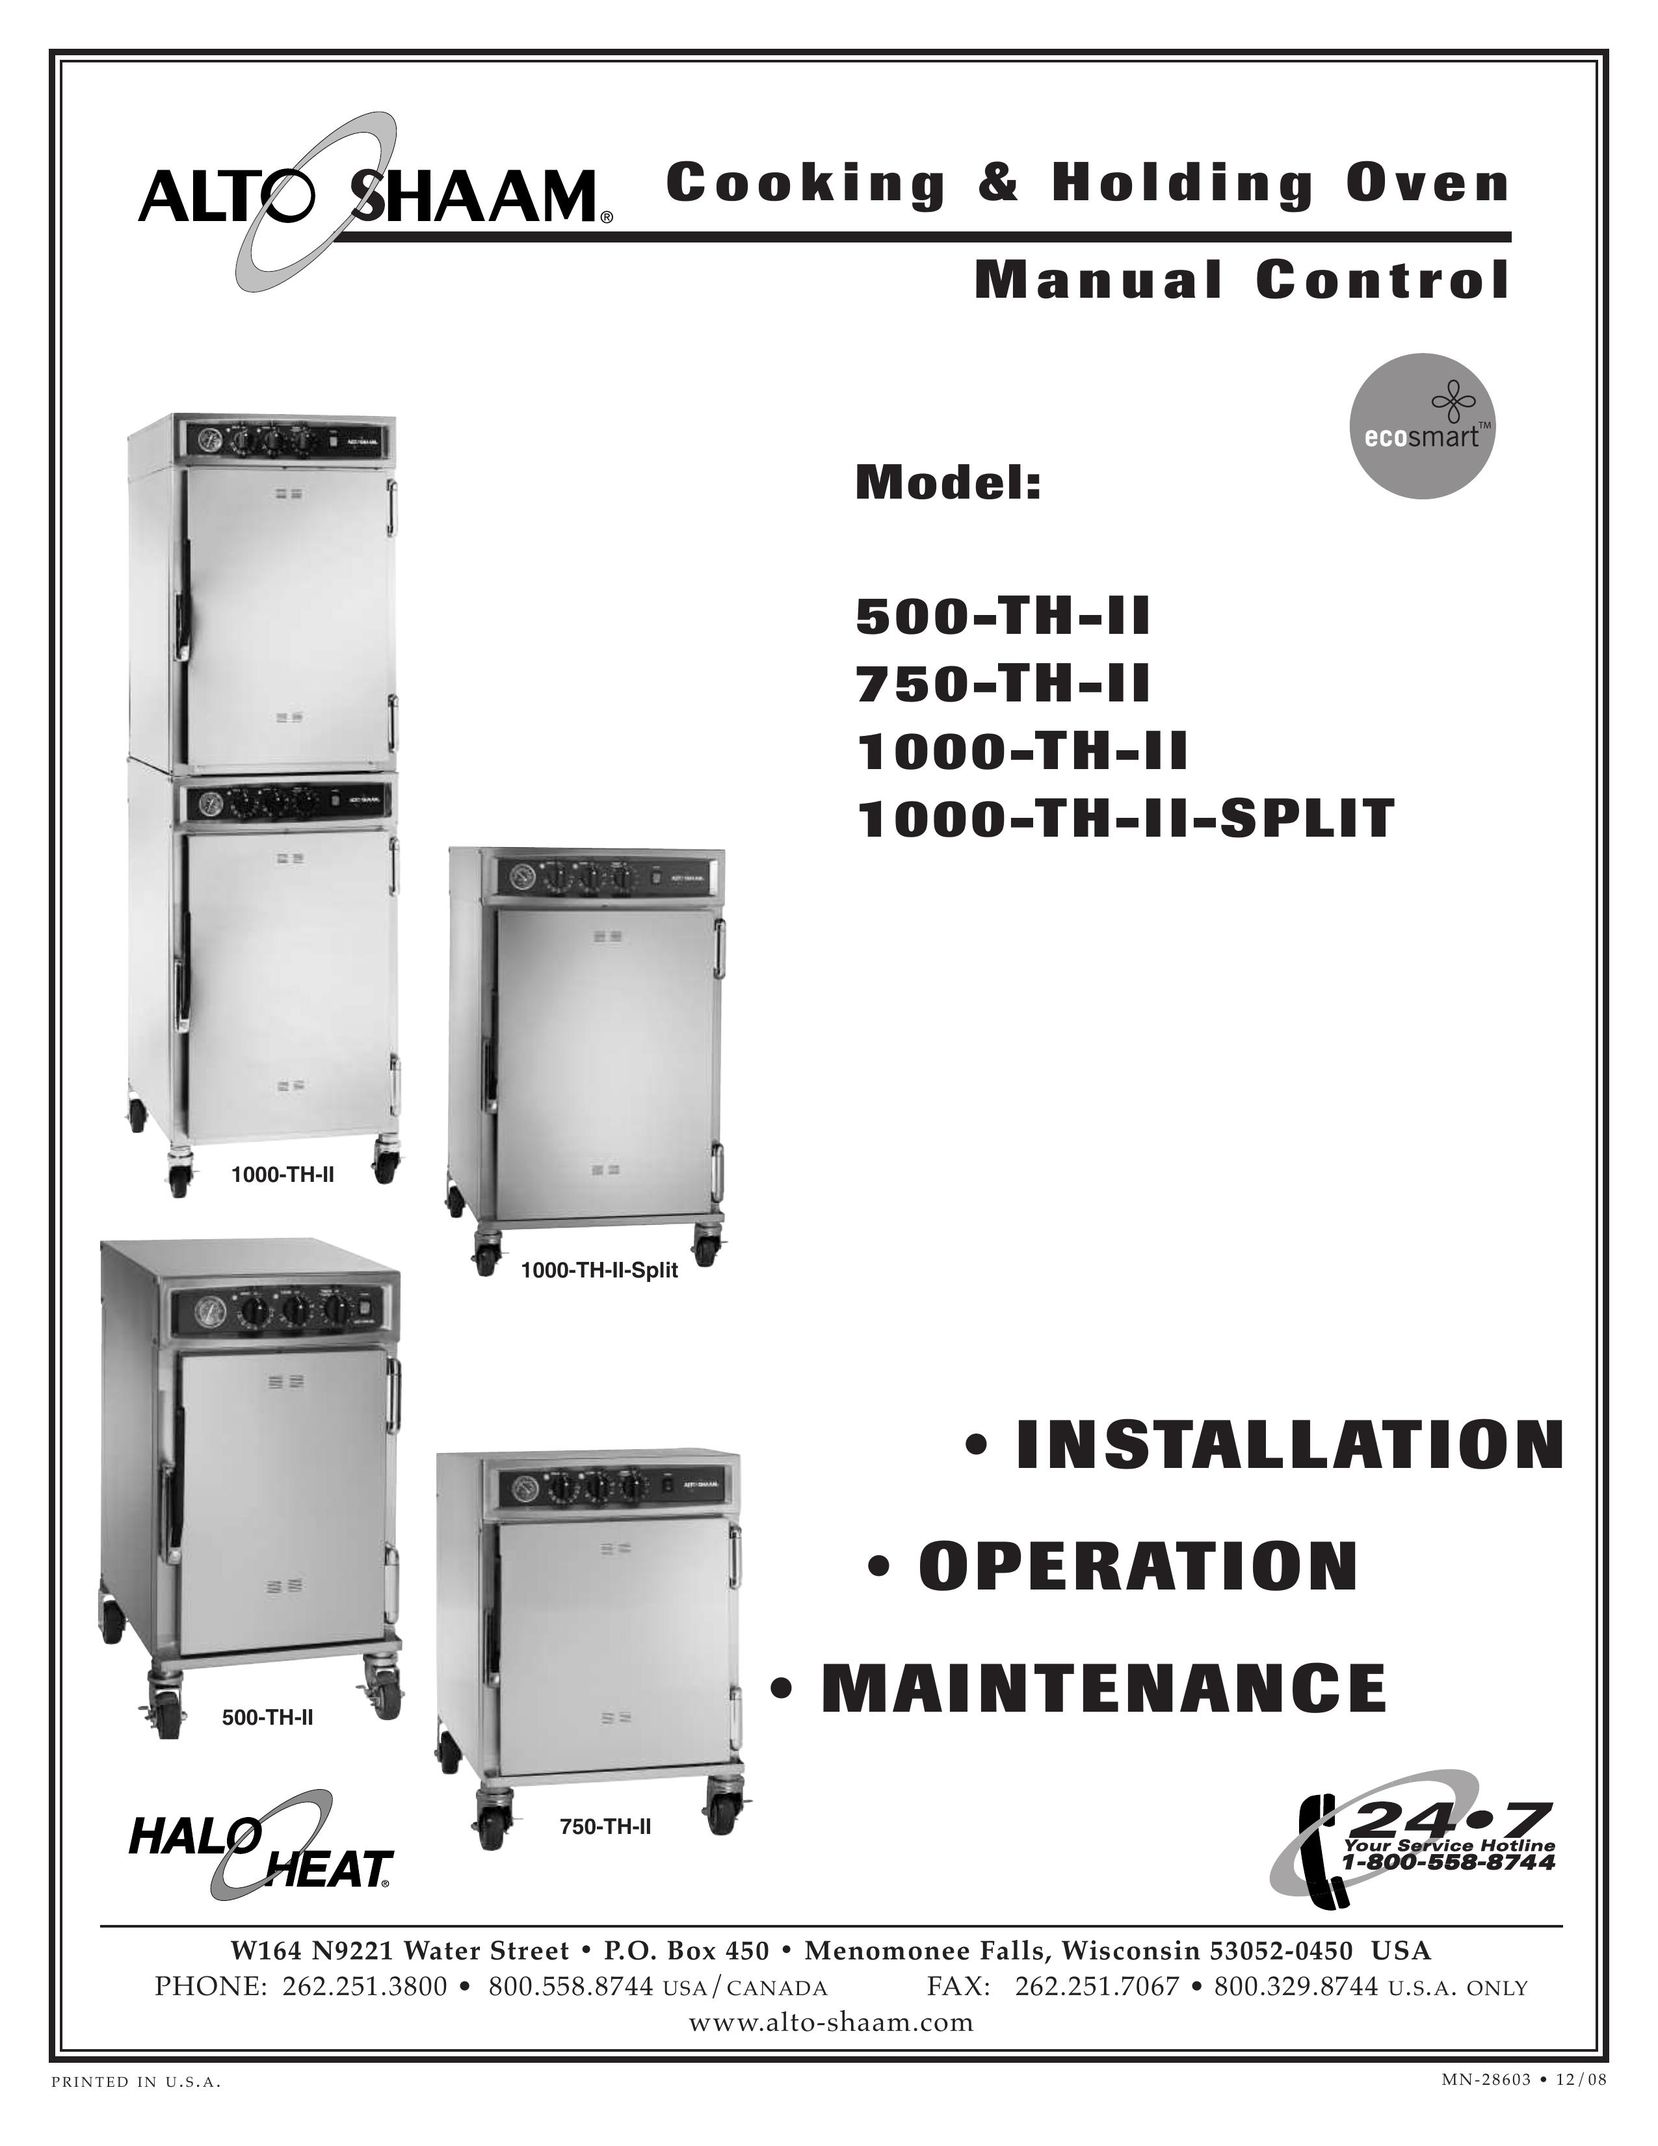 Alto-Shaam 1000-TH-II-SPLIT Oven User Manual